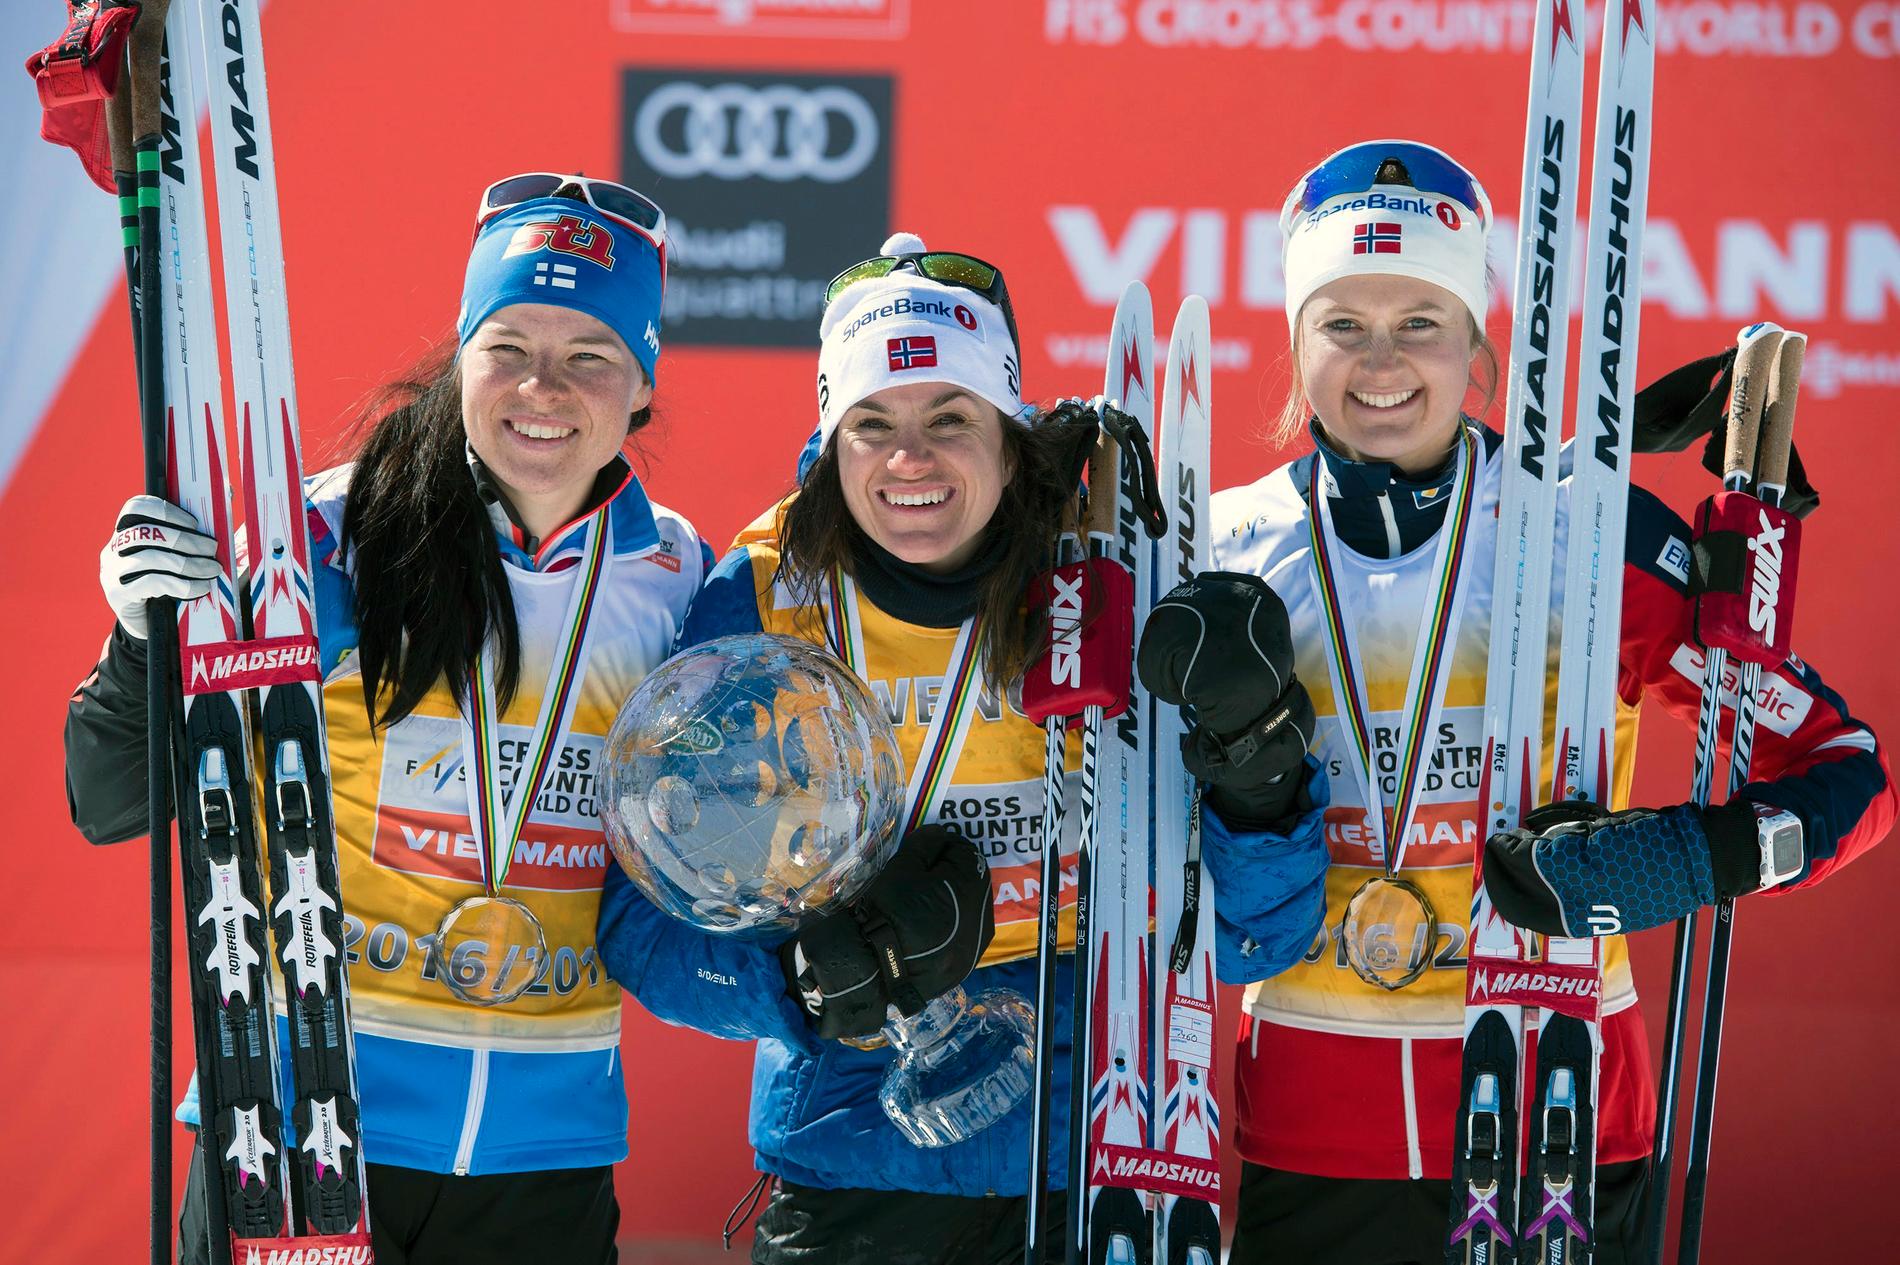 I helgen blev Flugstad Östberg klar trea i totala världscupen efter Heidi Weng och Krista Pärmäkoski.